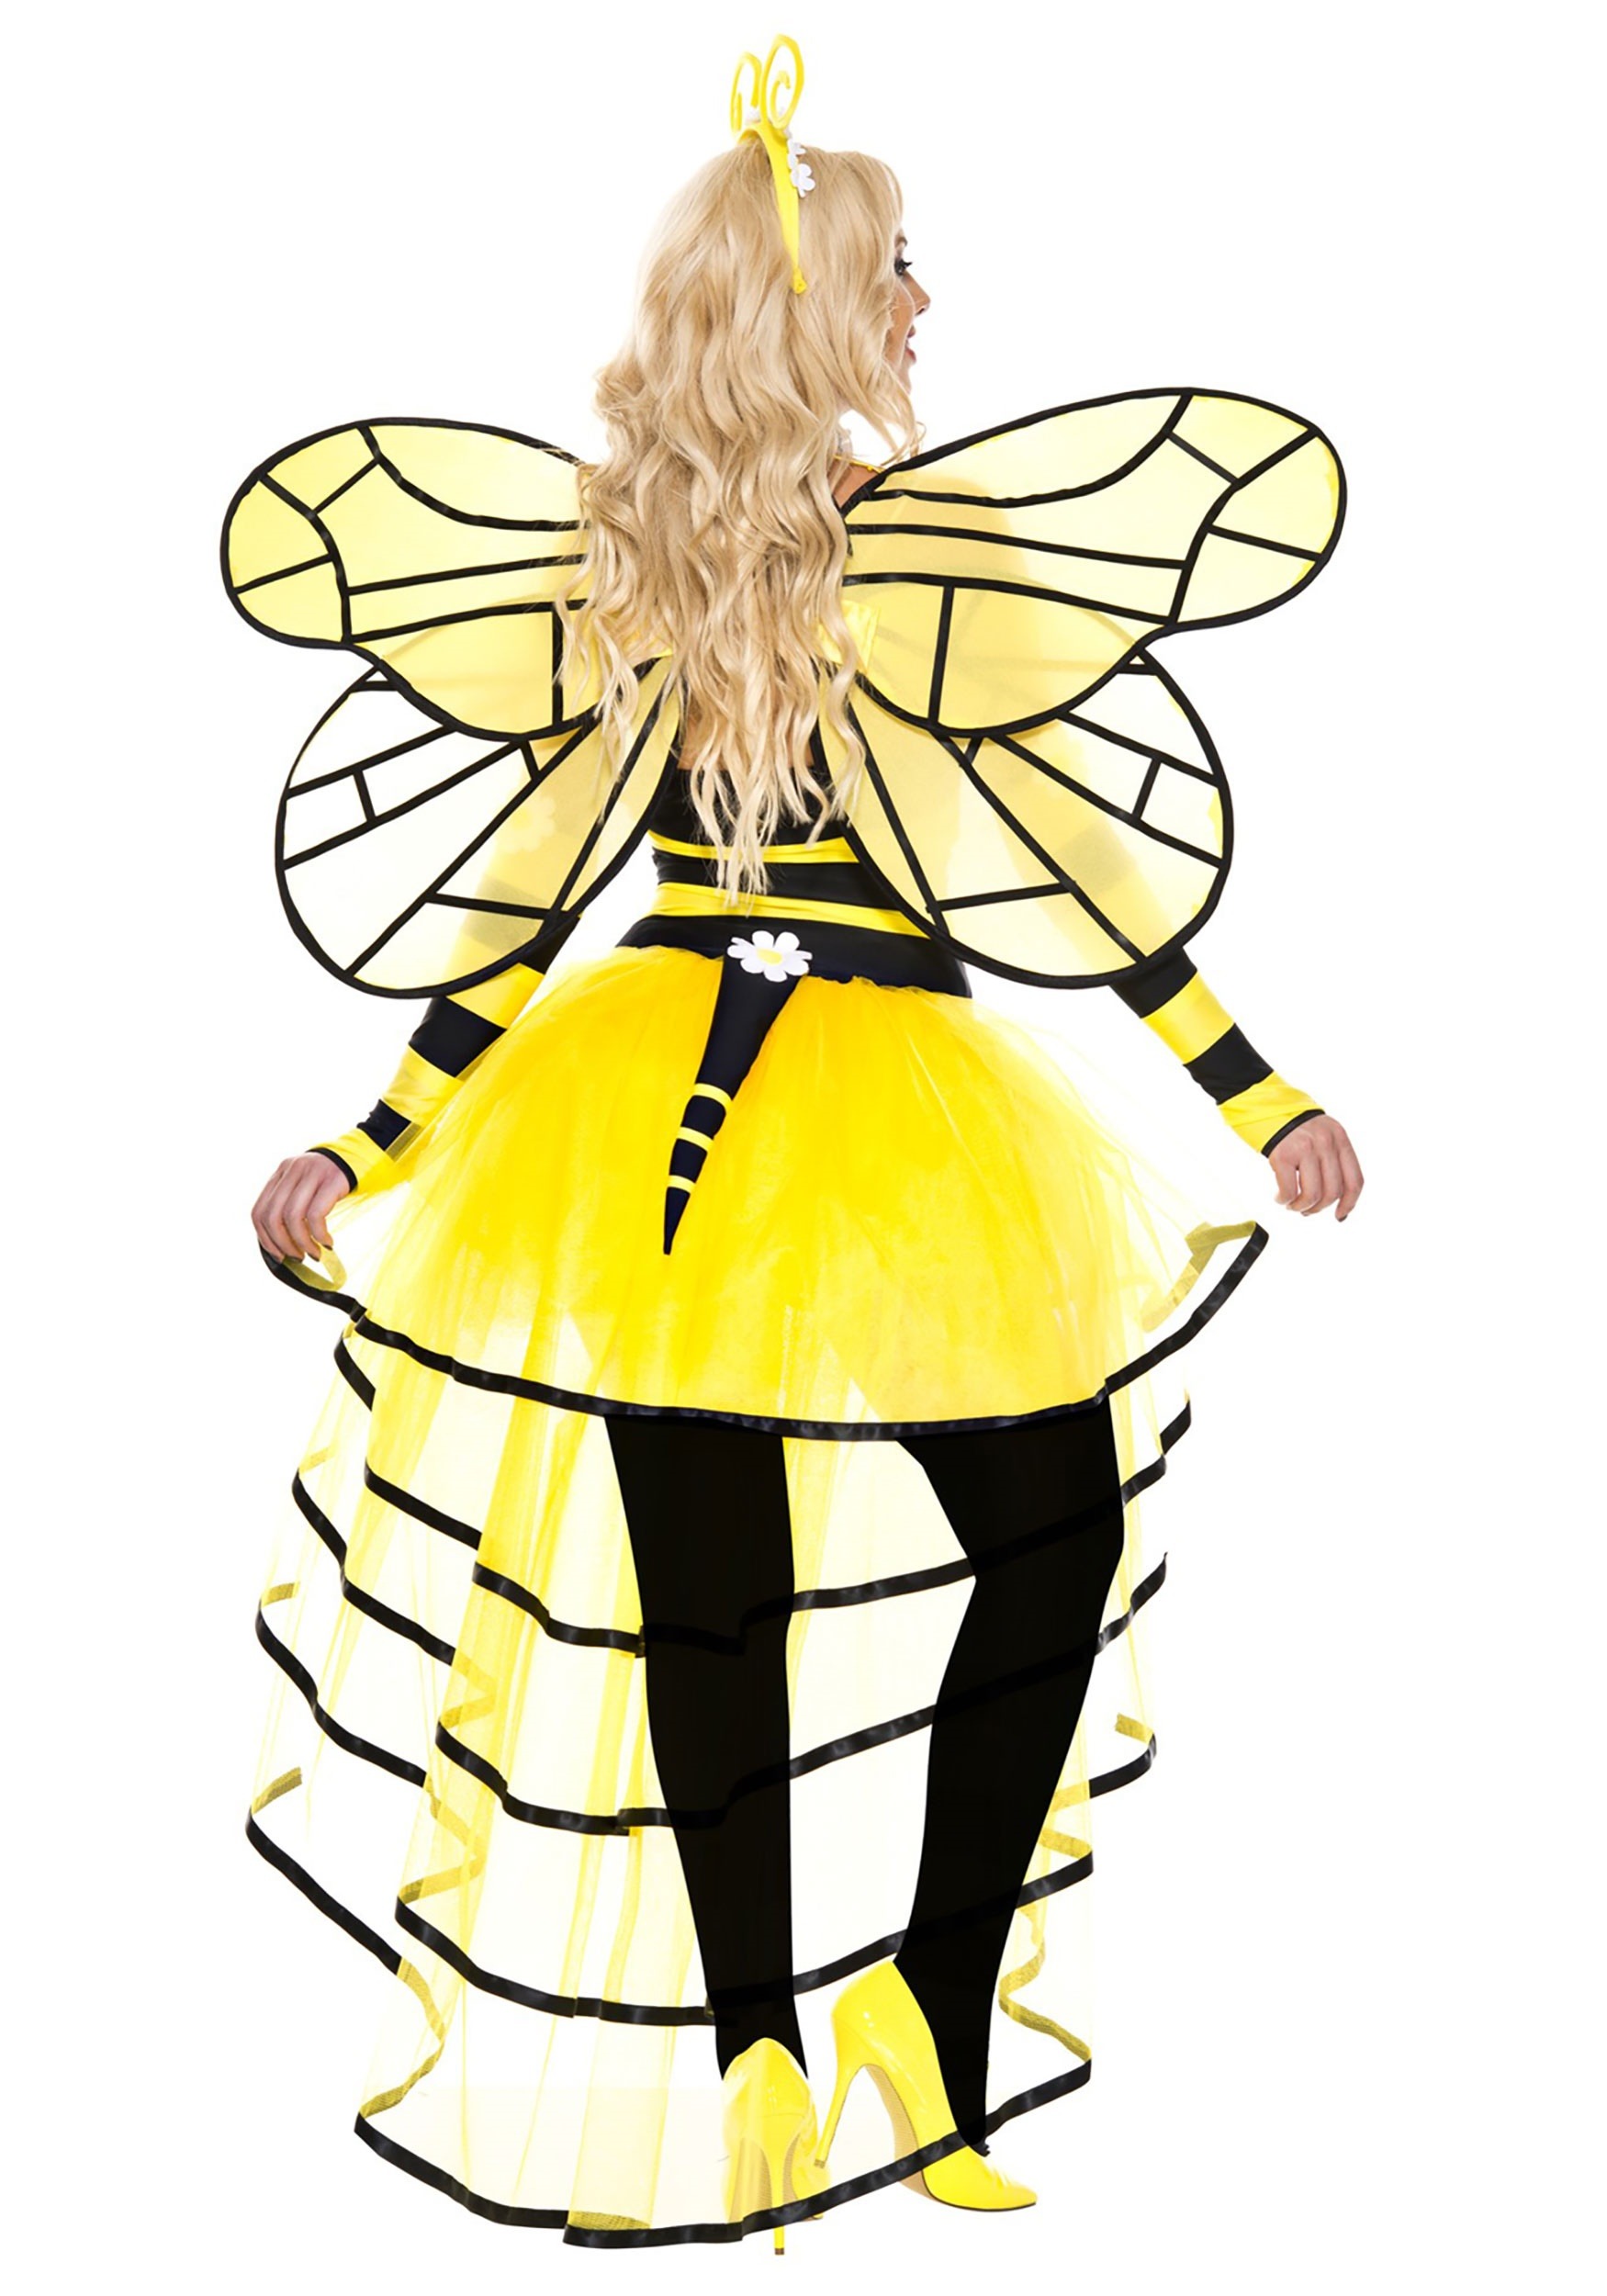 Deluxe Women's Queen Bee Costume